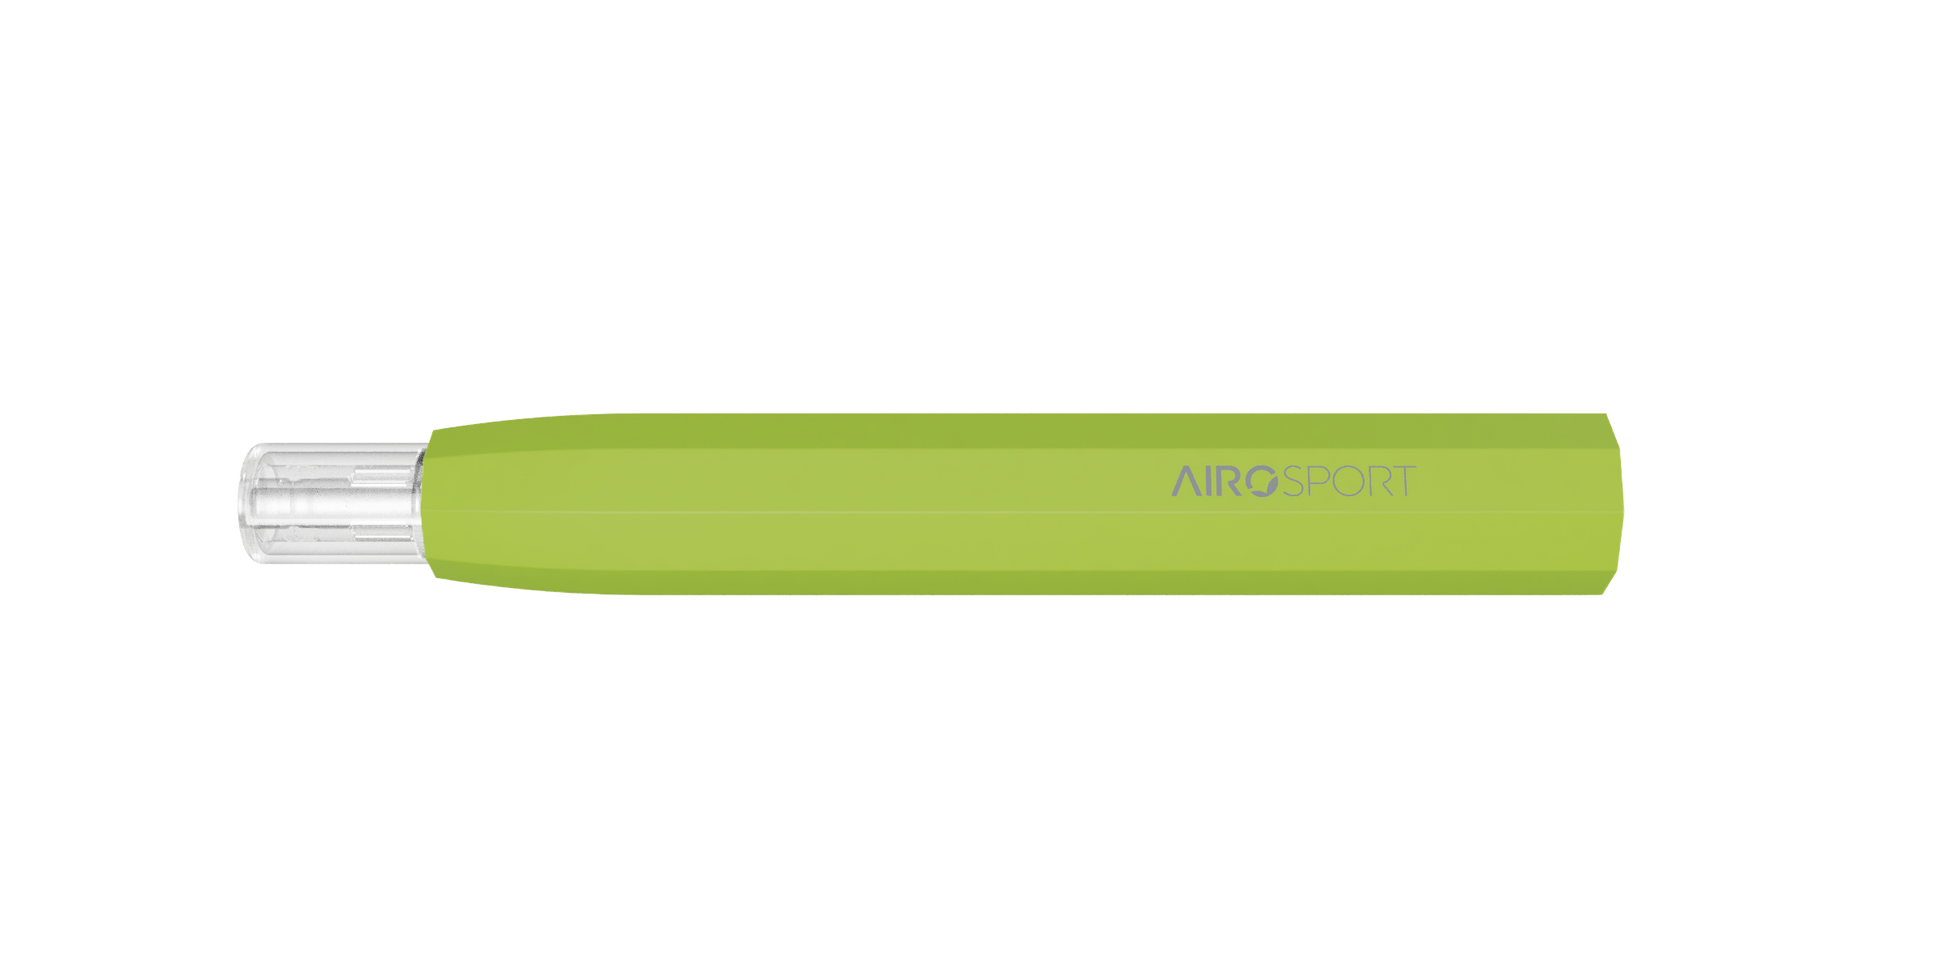 Airosport - Wholesale Airopro Vape Pen